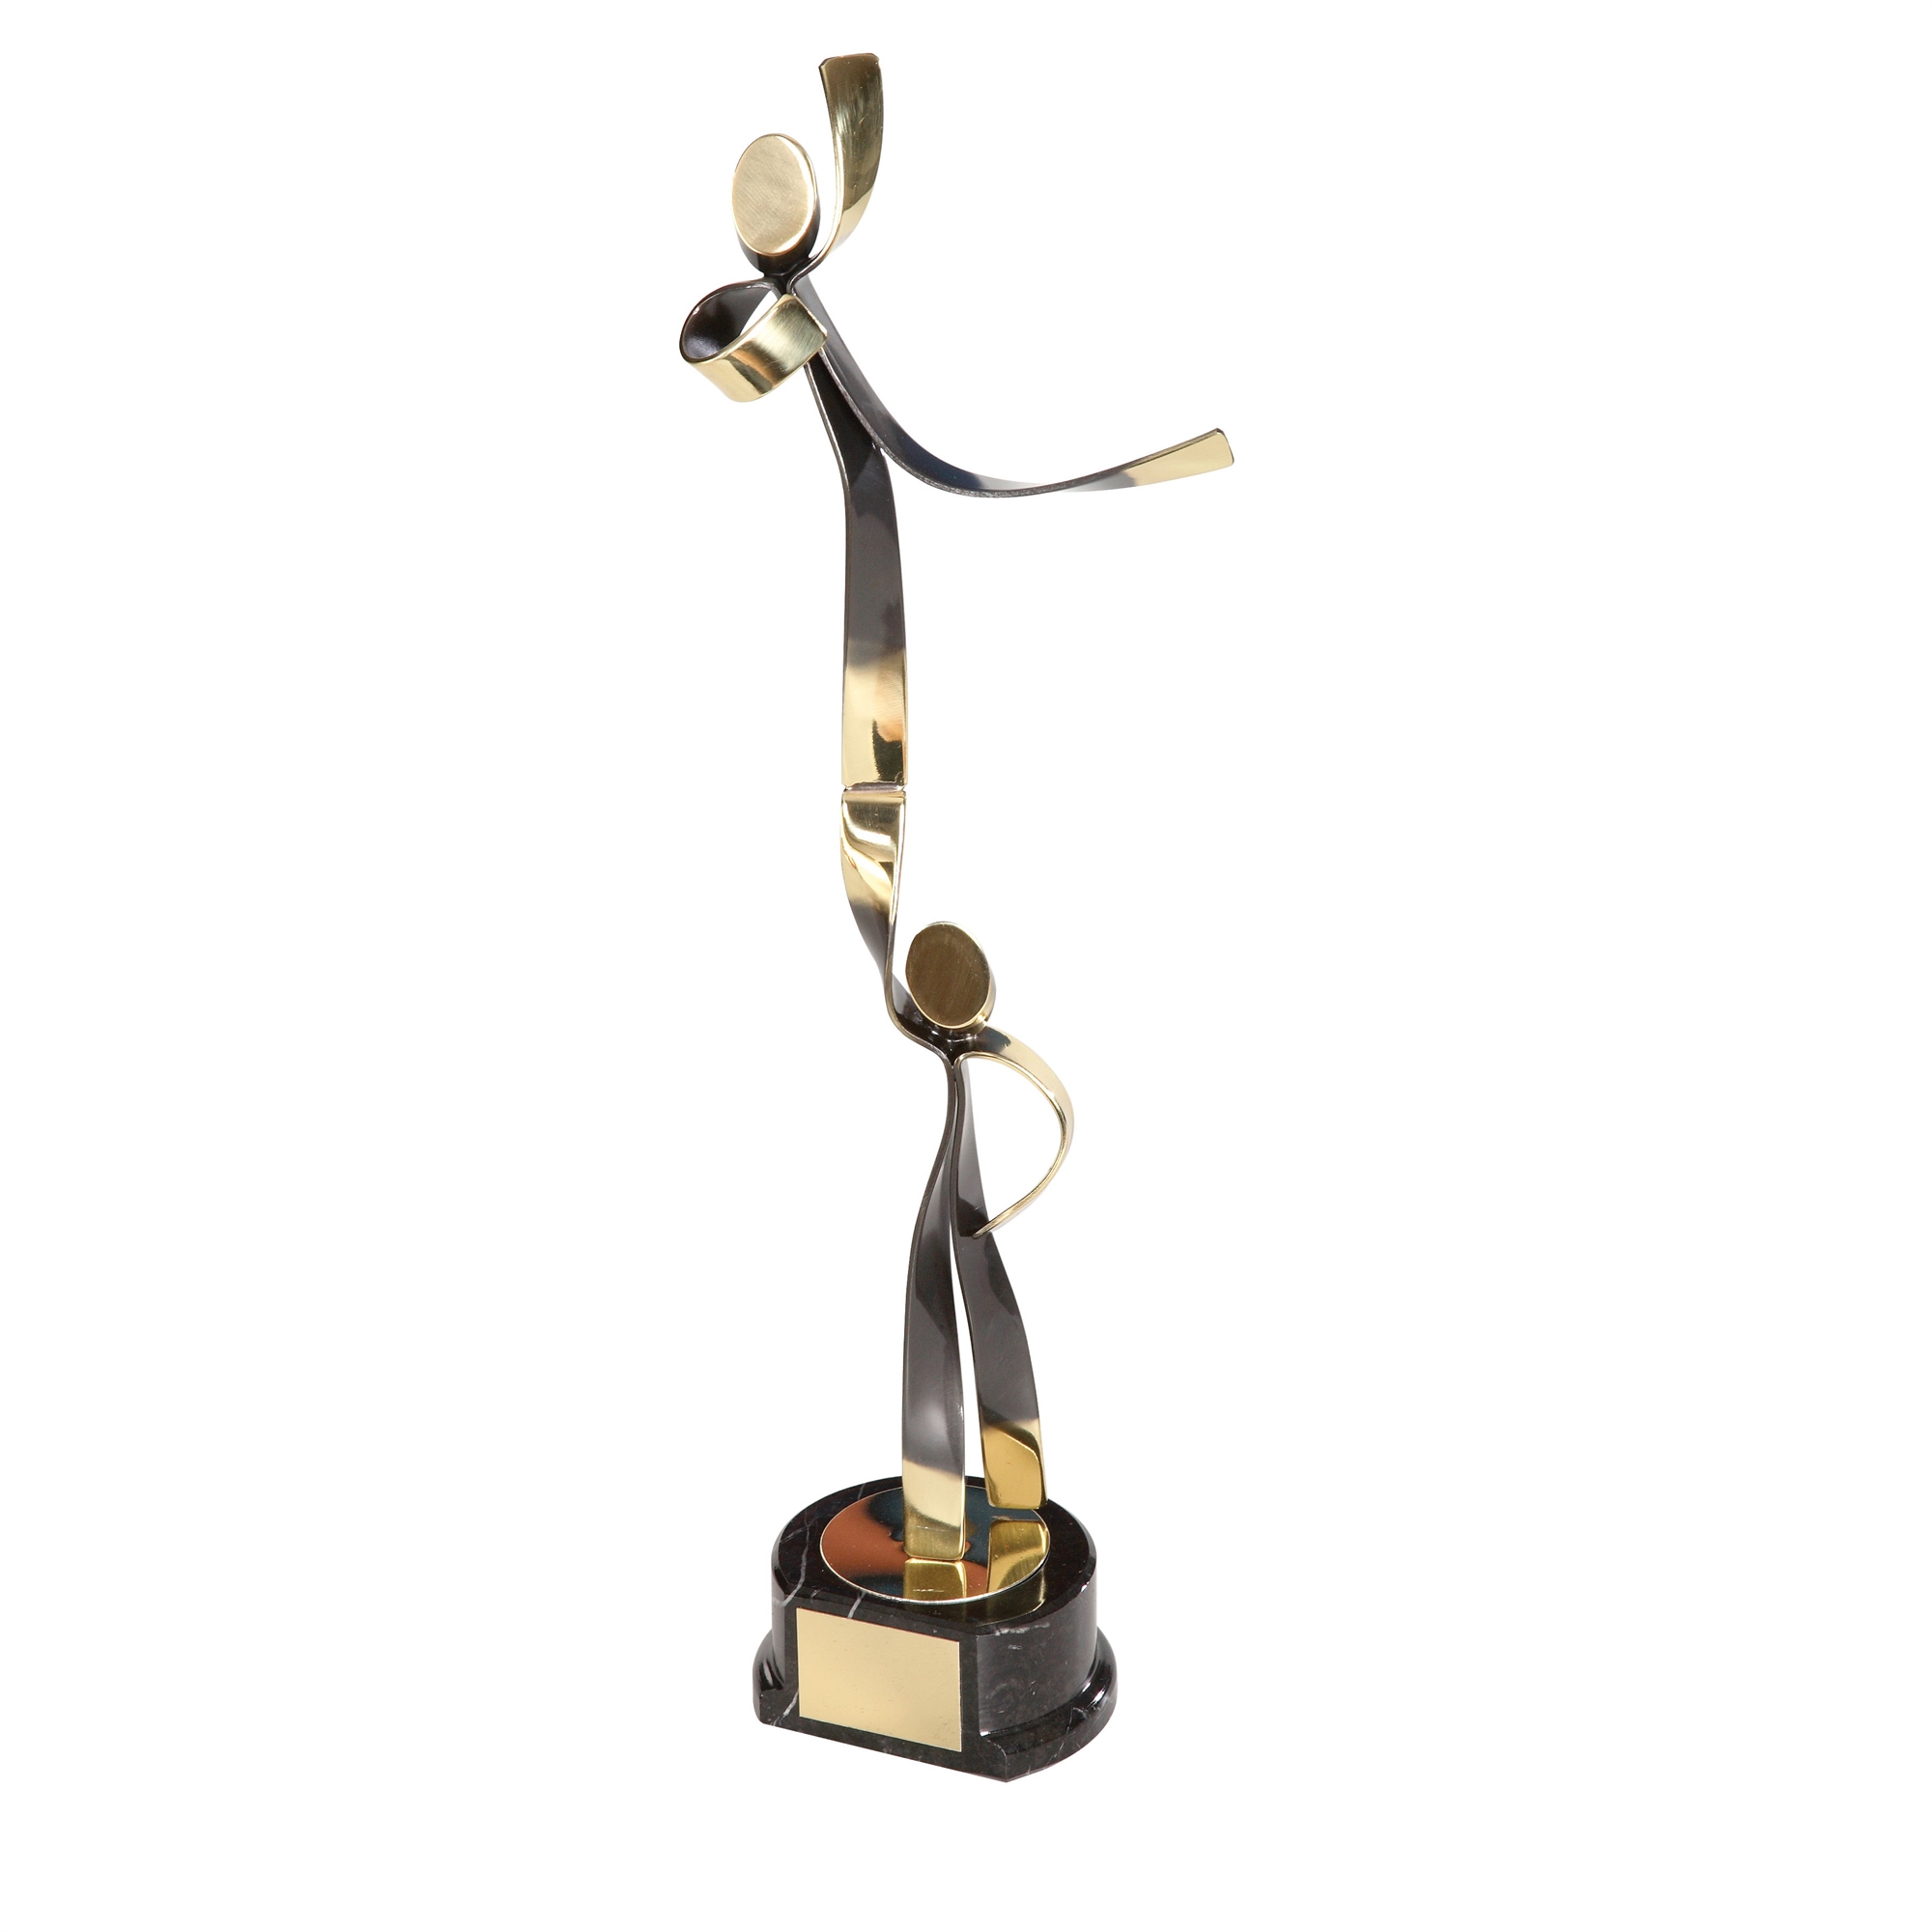 Cheerleading Figures Handmade Metal Trophy - 467